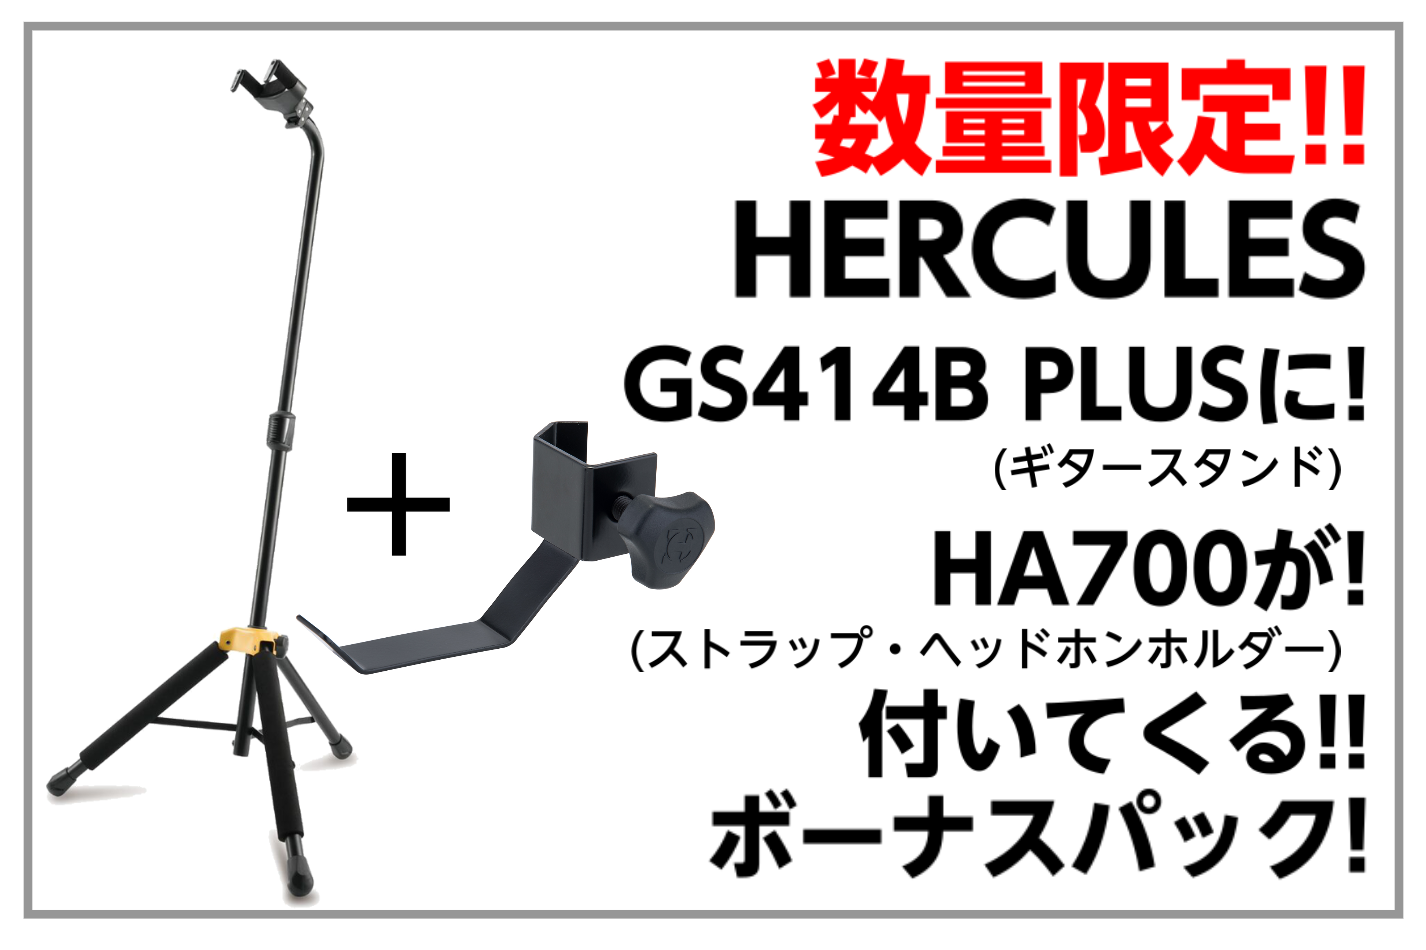 HERCULES GS414B PLUSボーナスパック入荷!!